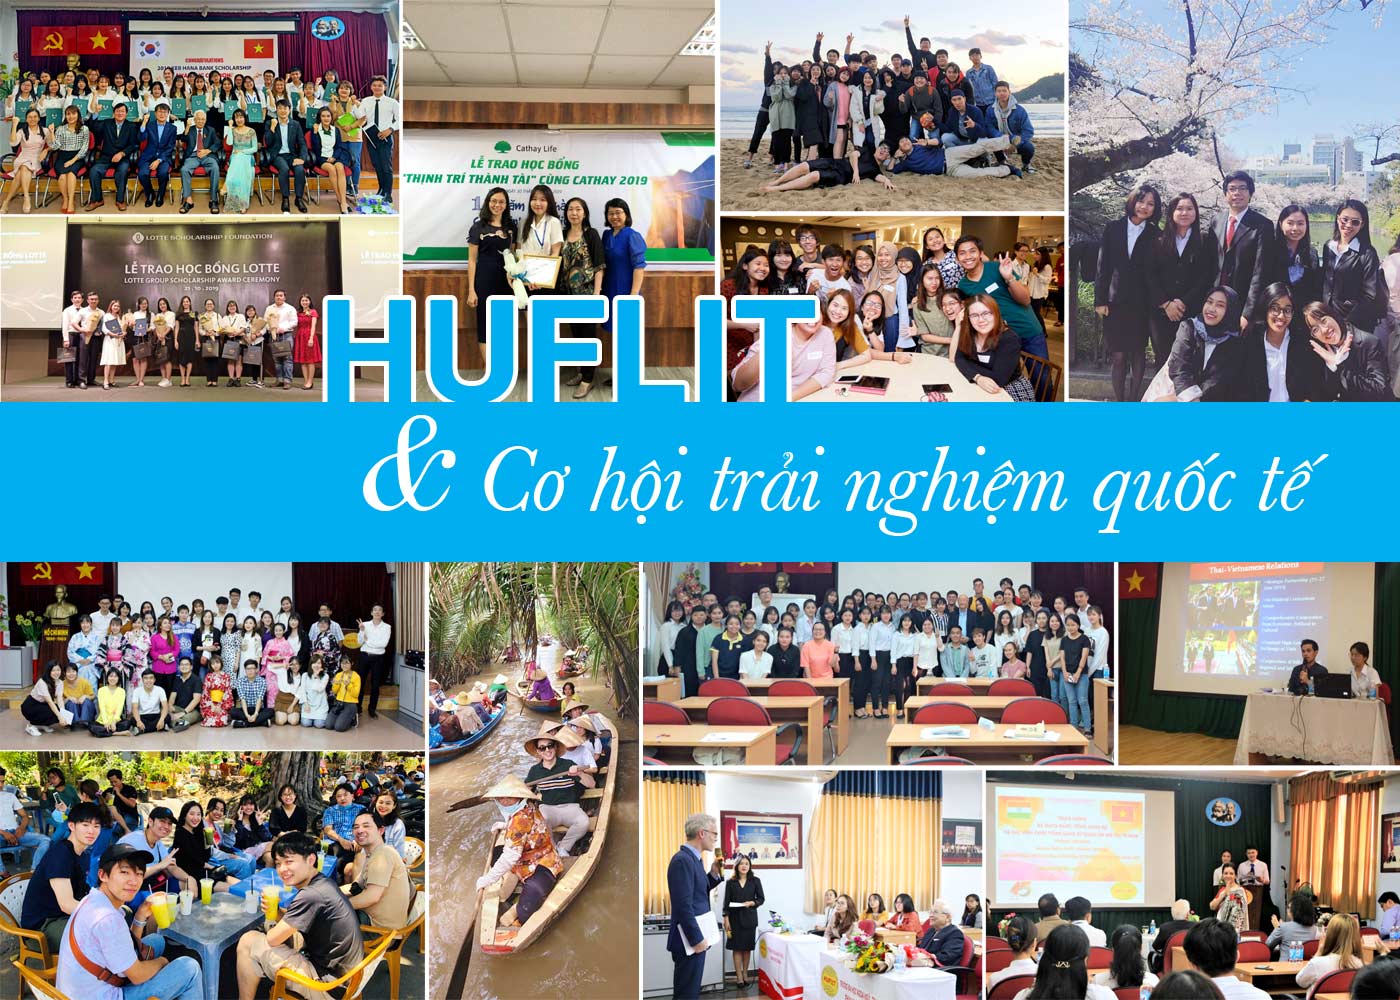 HUFLIT và cơ hội trải nghiệm quốc tế - Ảnh 1